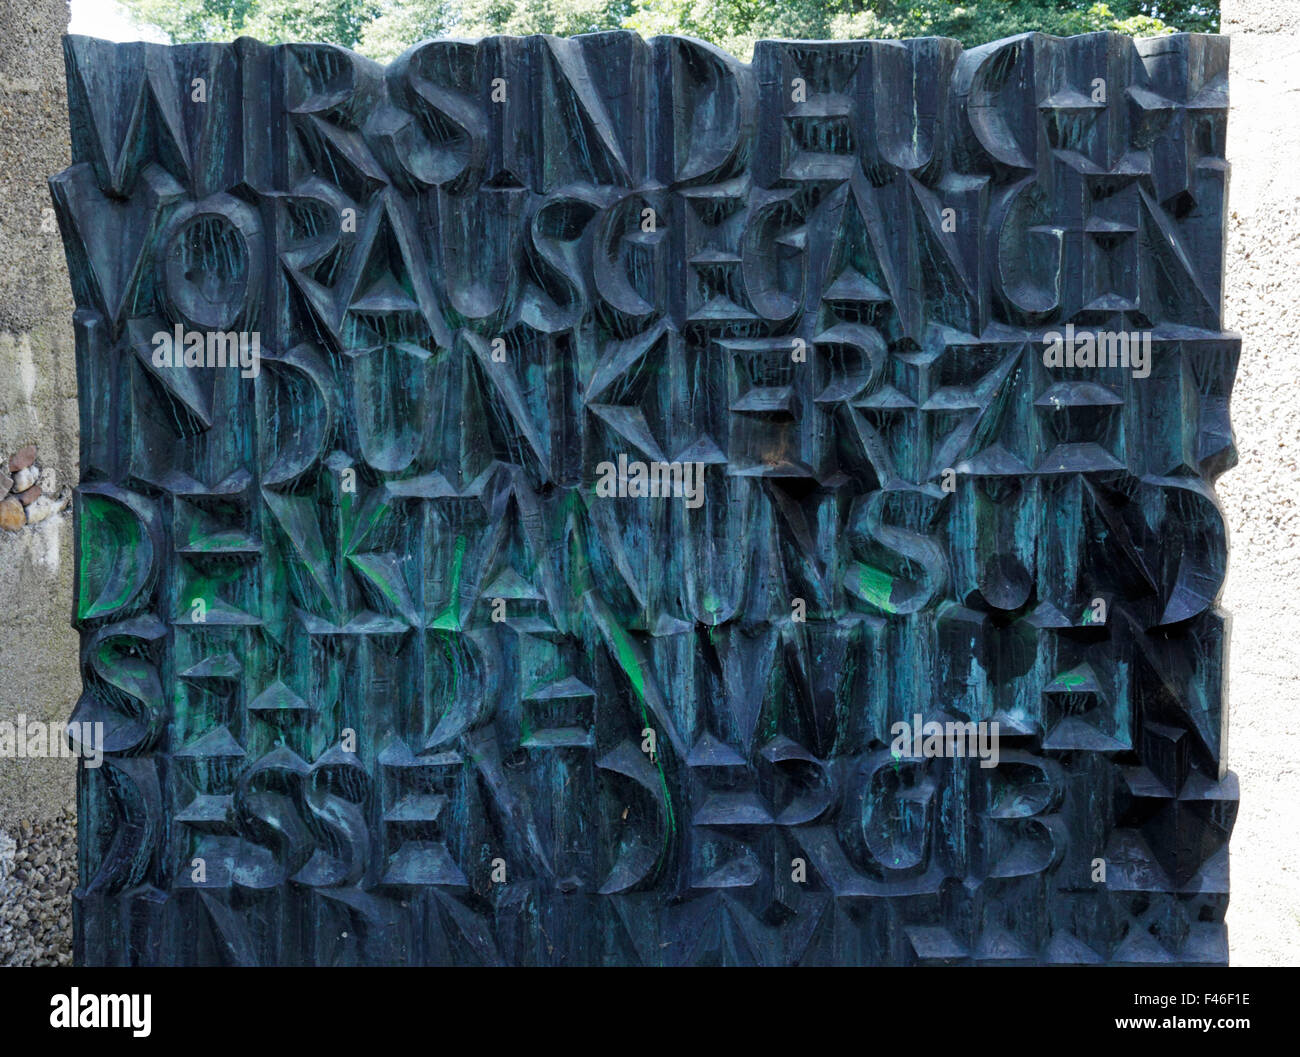 Bronzeplatte am Denkmal Das Tor der Toten, Kriegsdenkmal und Mahnmal von Toni Hermanns und Fritz Koenig in Rheinberg, Niederrhein, Ruhrgebiet, Nordrhe Stock Photo